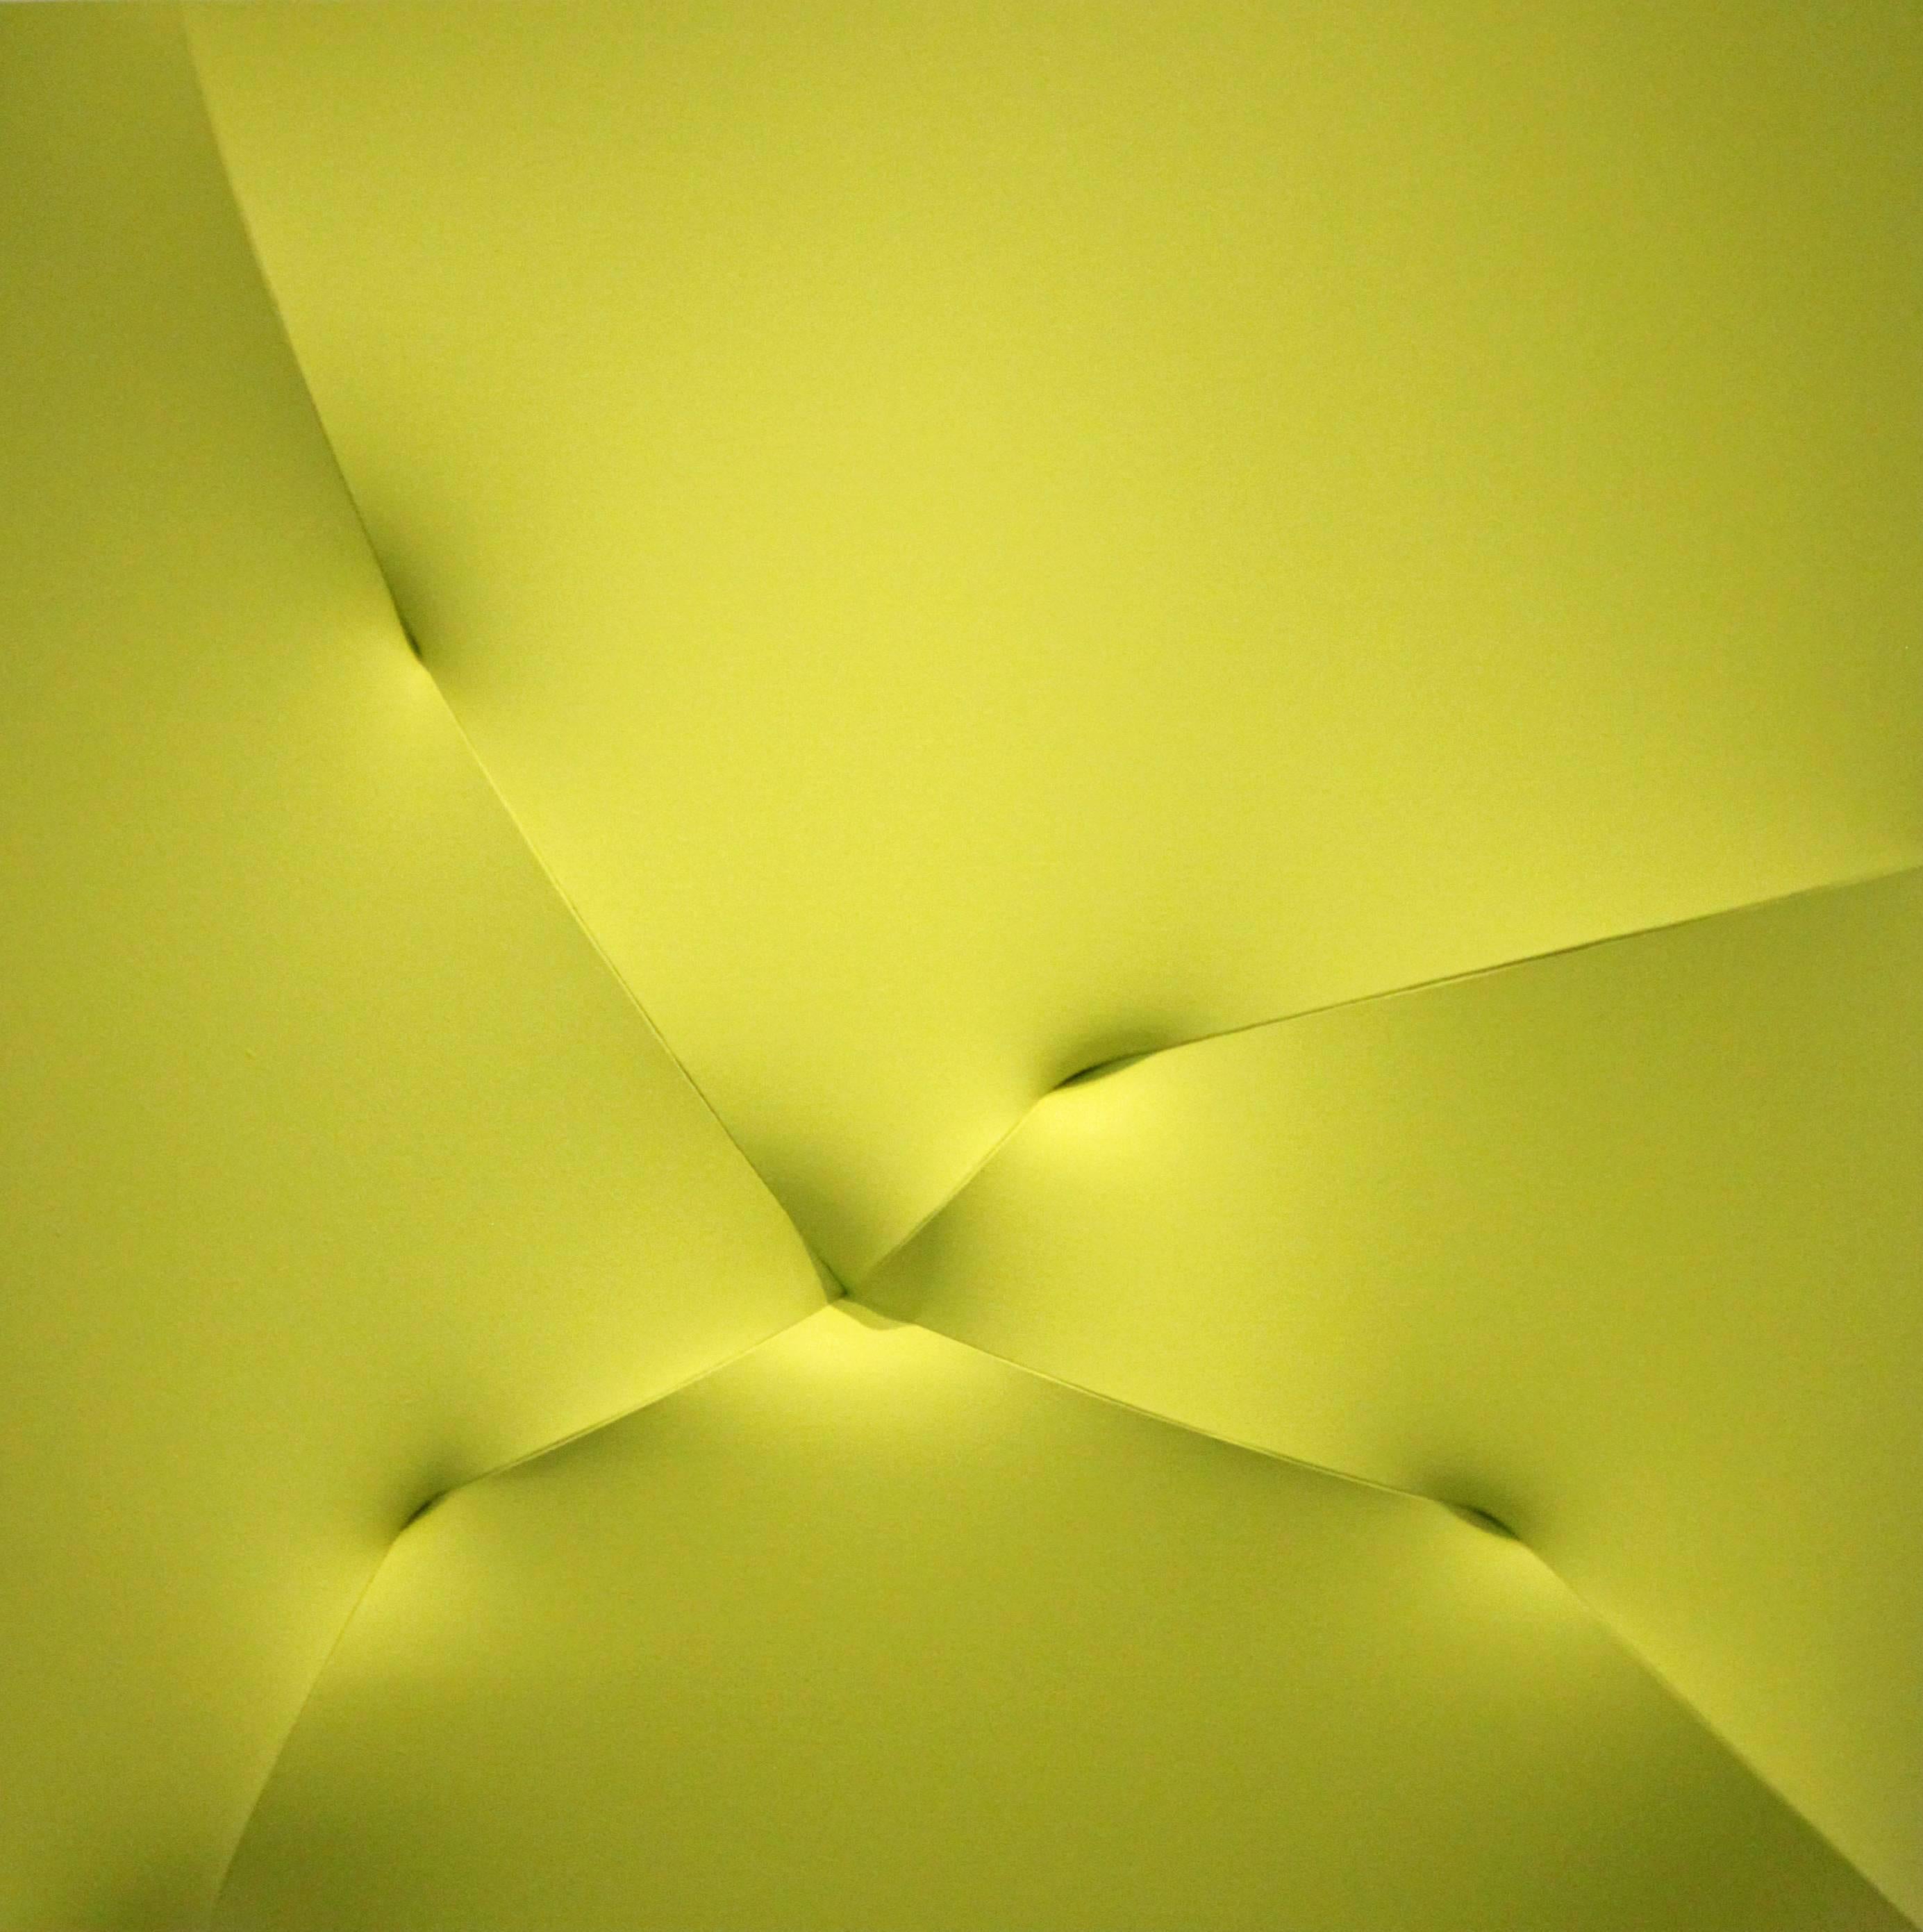 Broken Yellow - Sculpture by Jan Maarten Voskuil